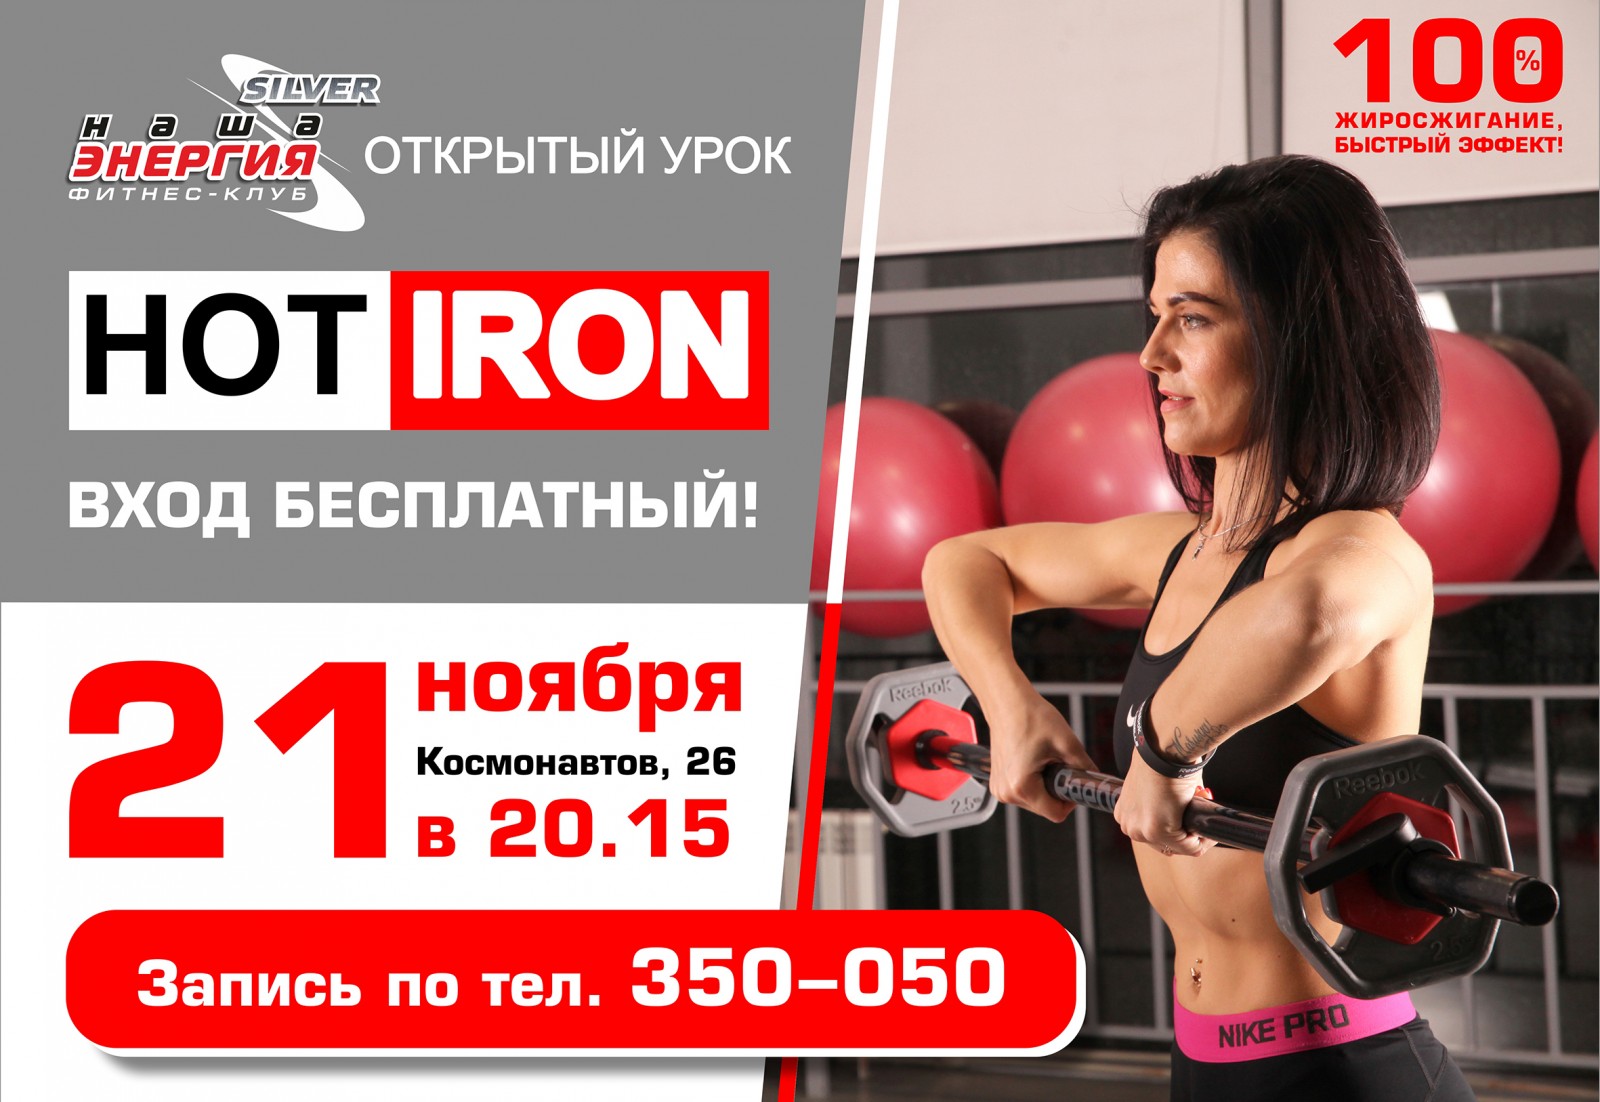 Hot iron (хот айрон) тренировка. что это такое в фитнесе, программа, упражнения, техника